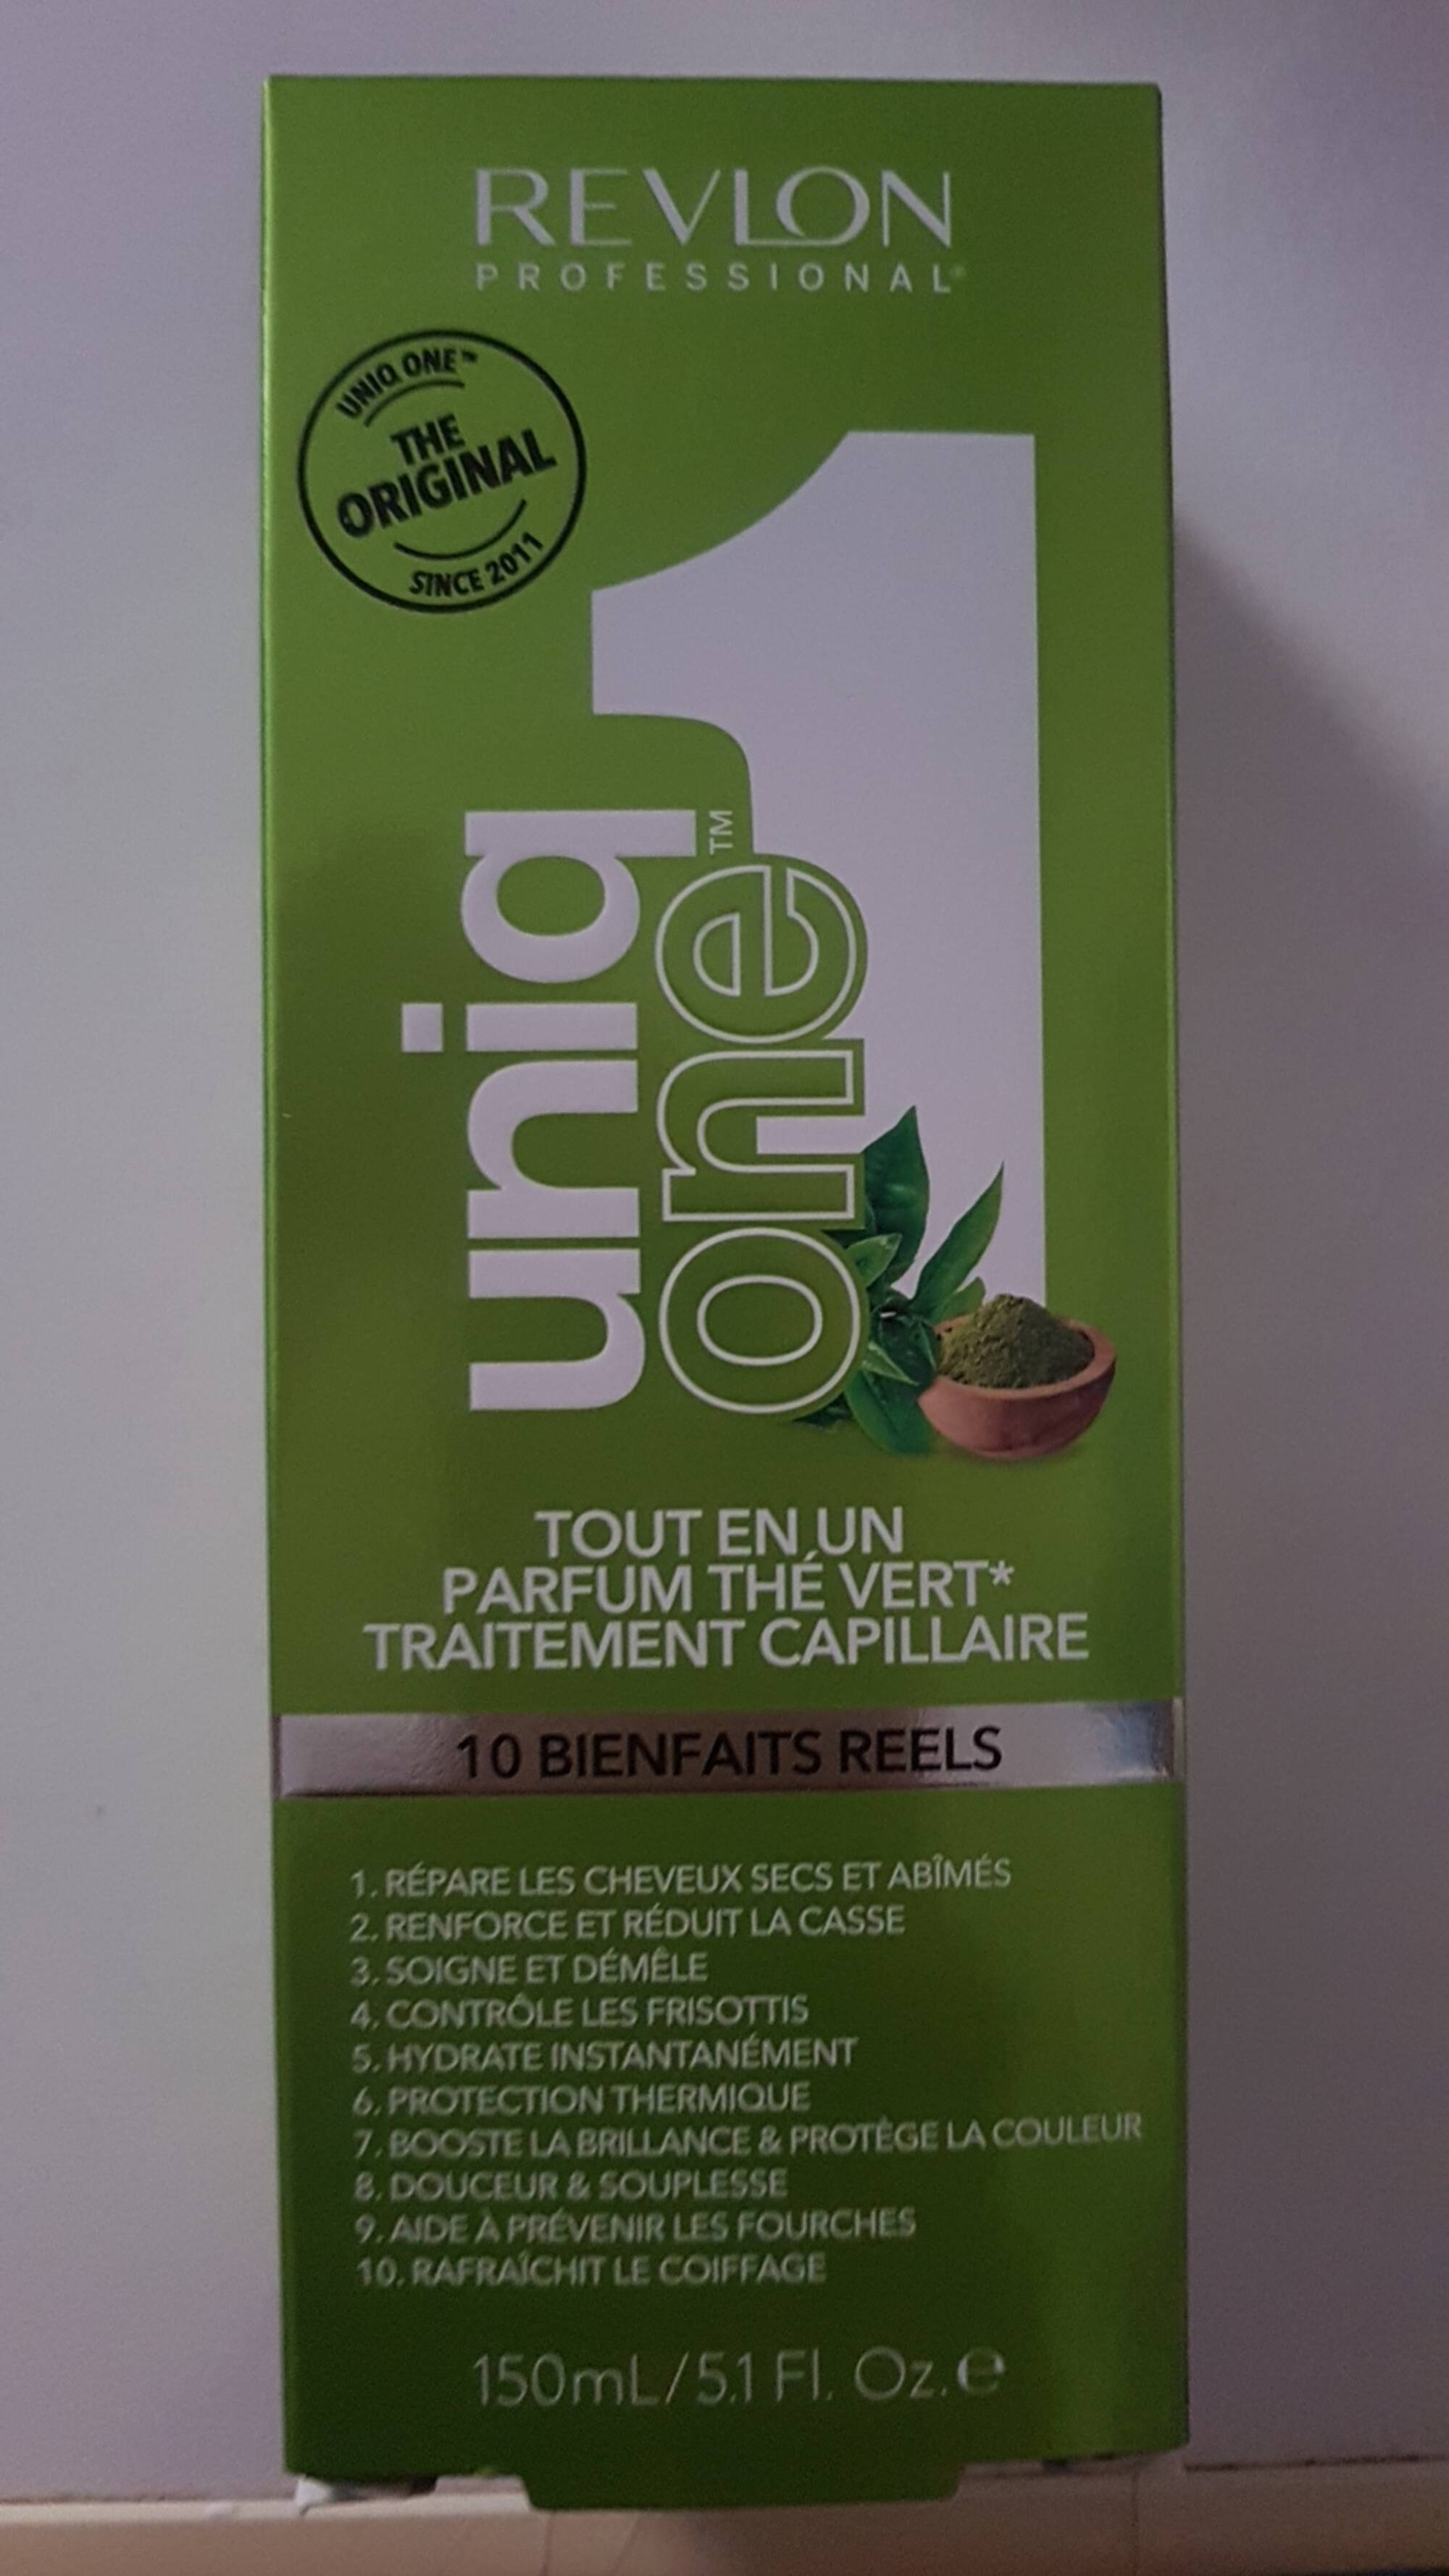 REVLON PROFESSIONAL - Uniq One - Traitement capillaire parfum thé vert